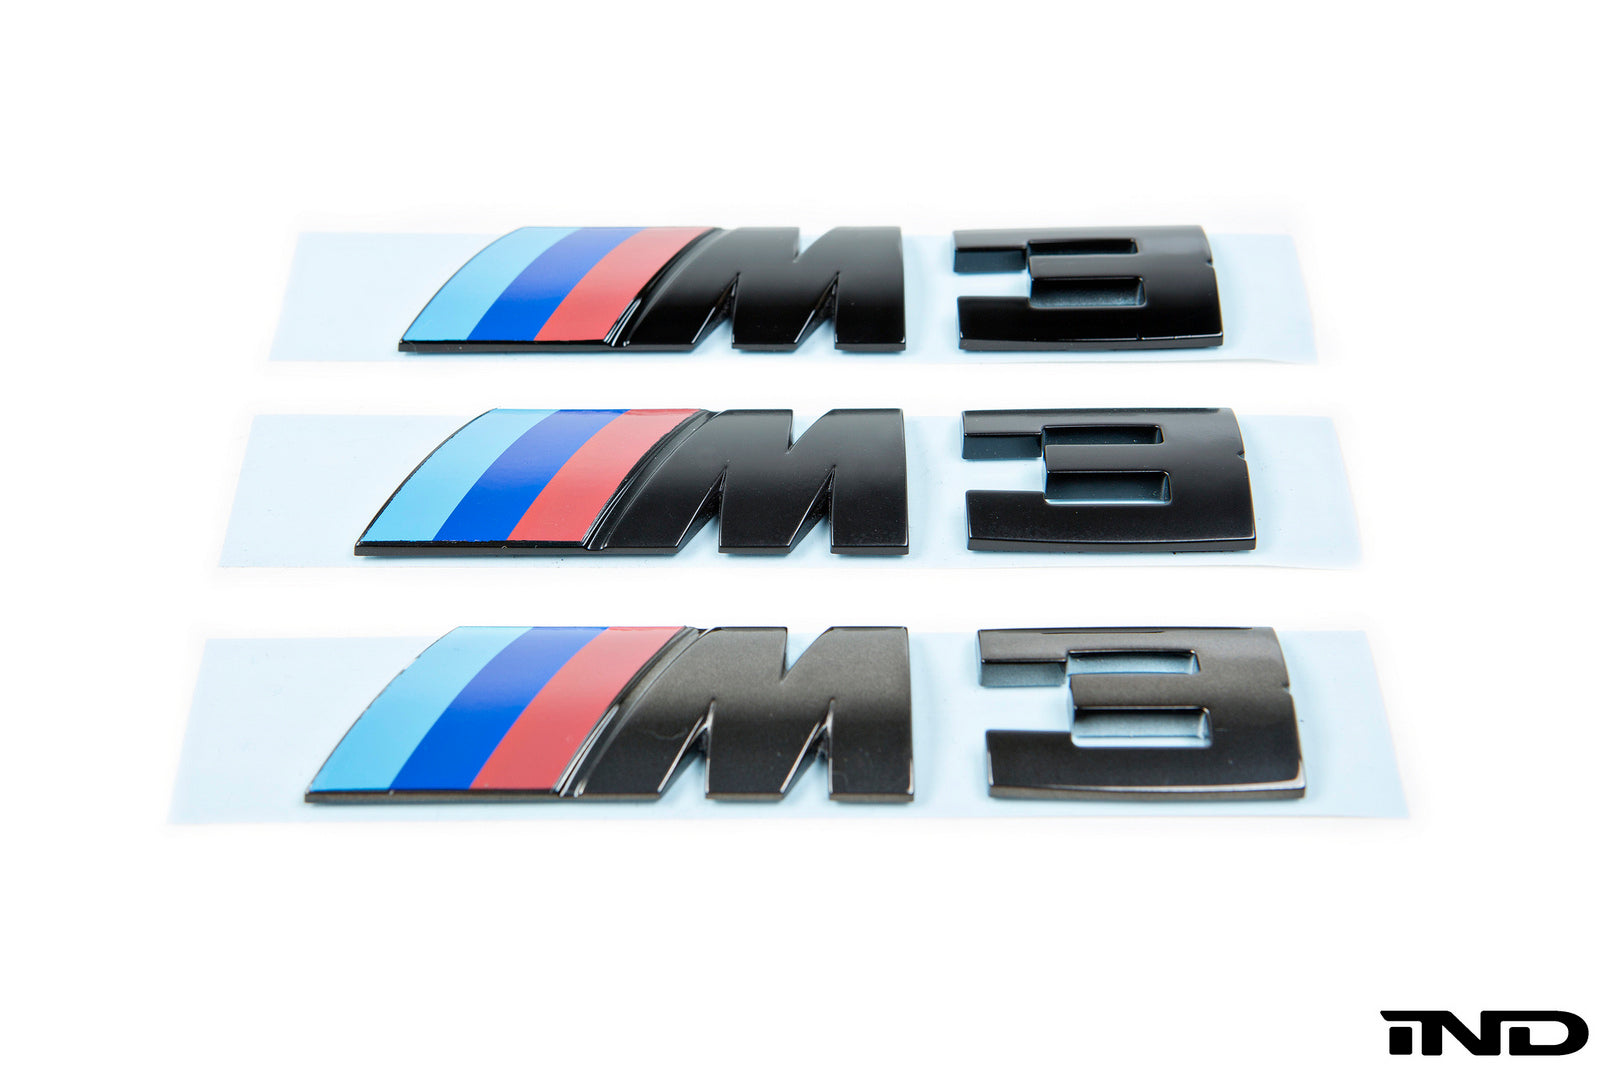 bmw m3 e46 logo